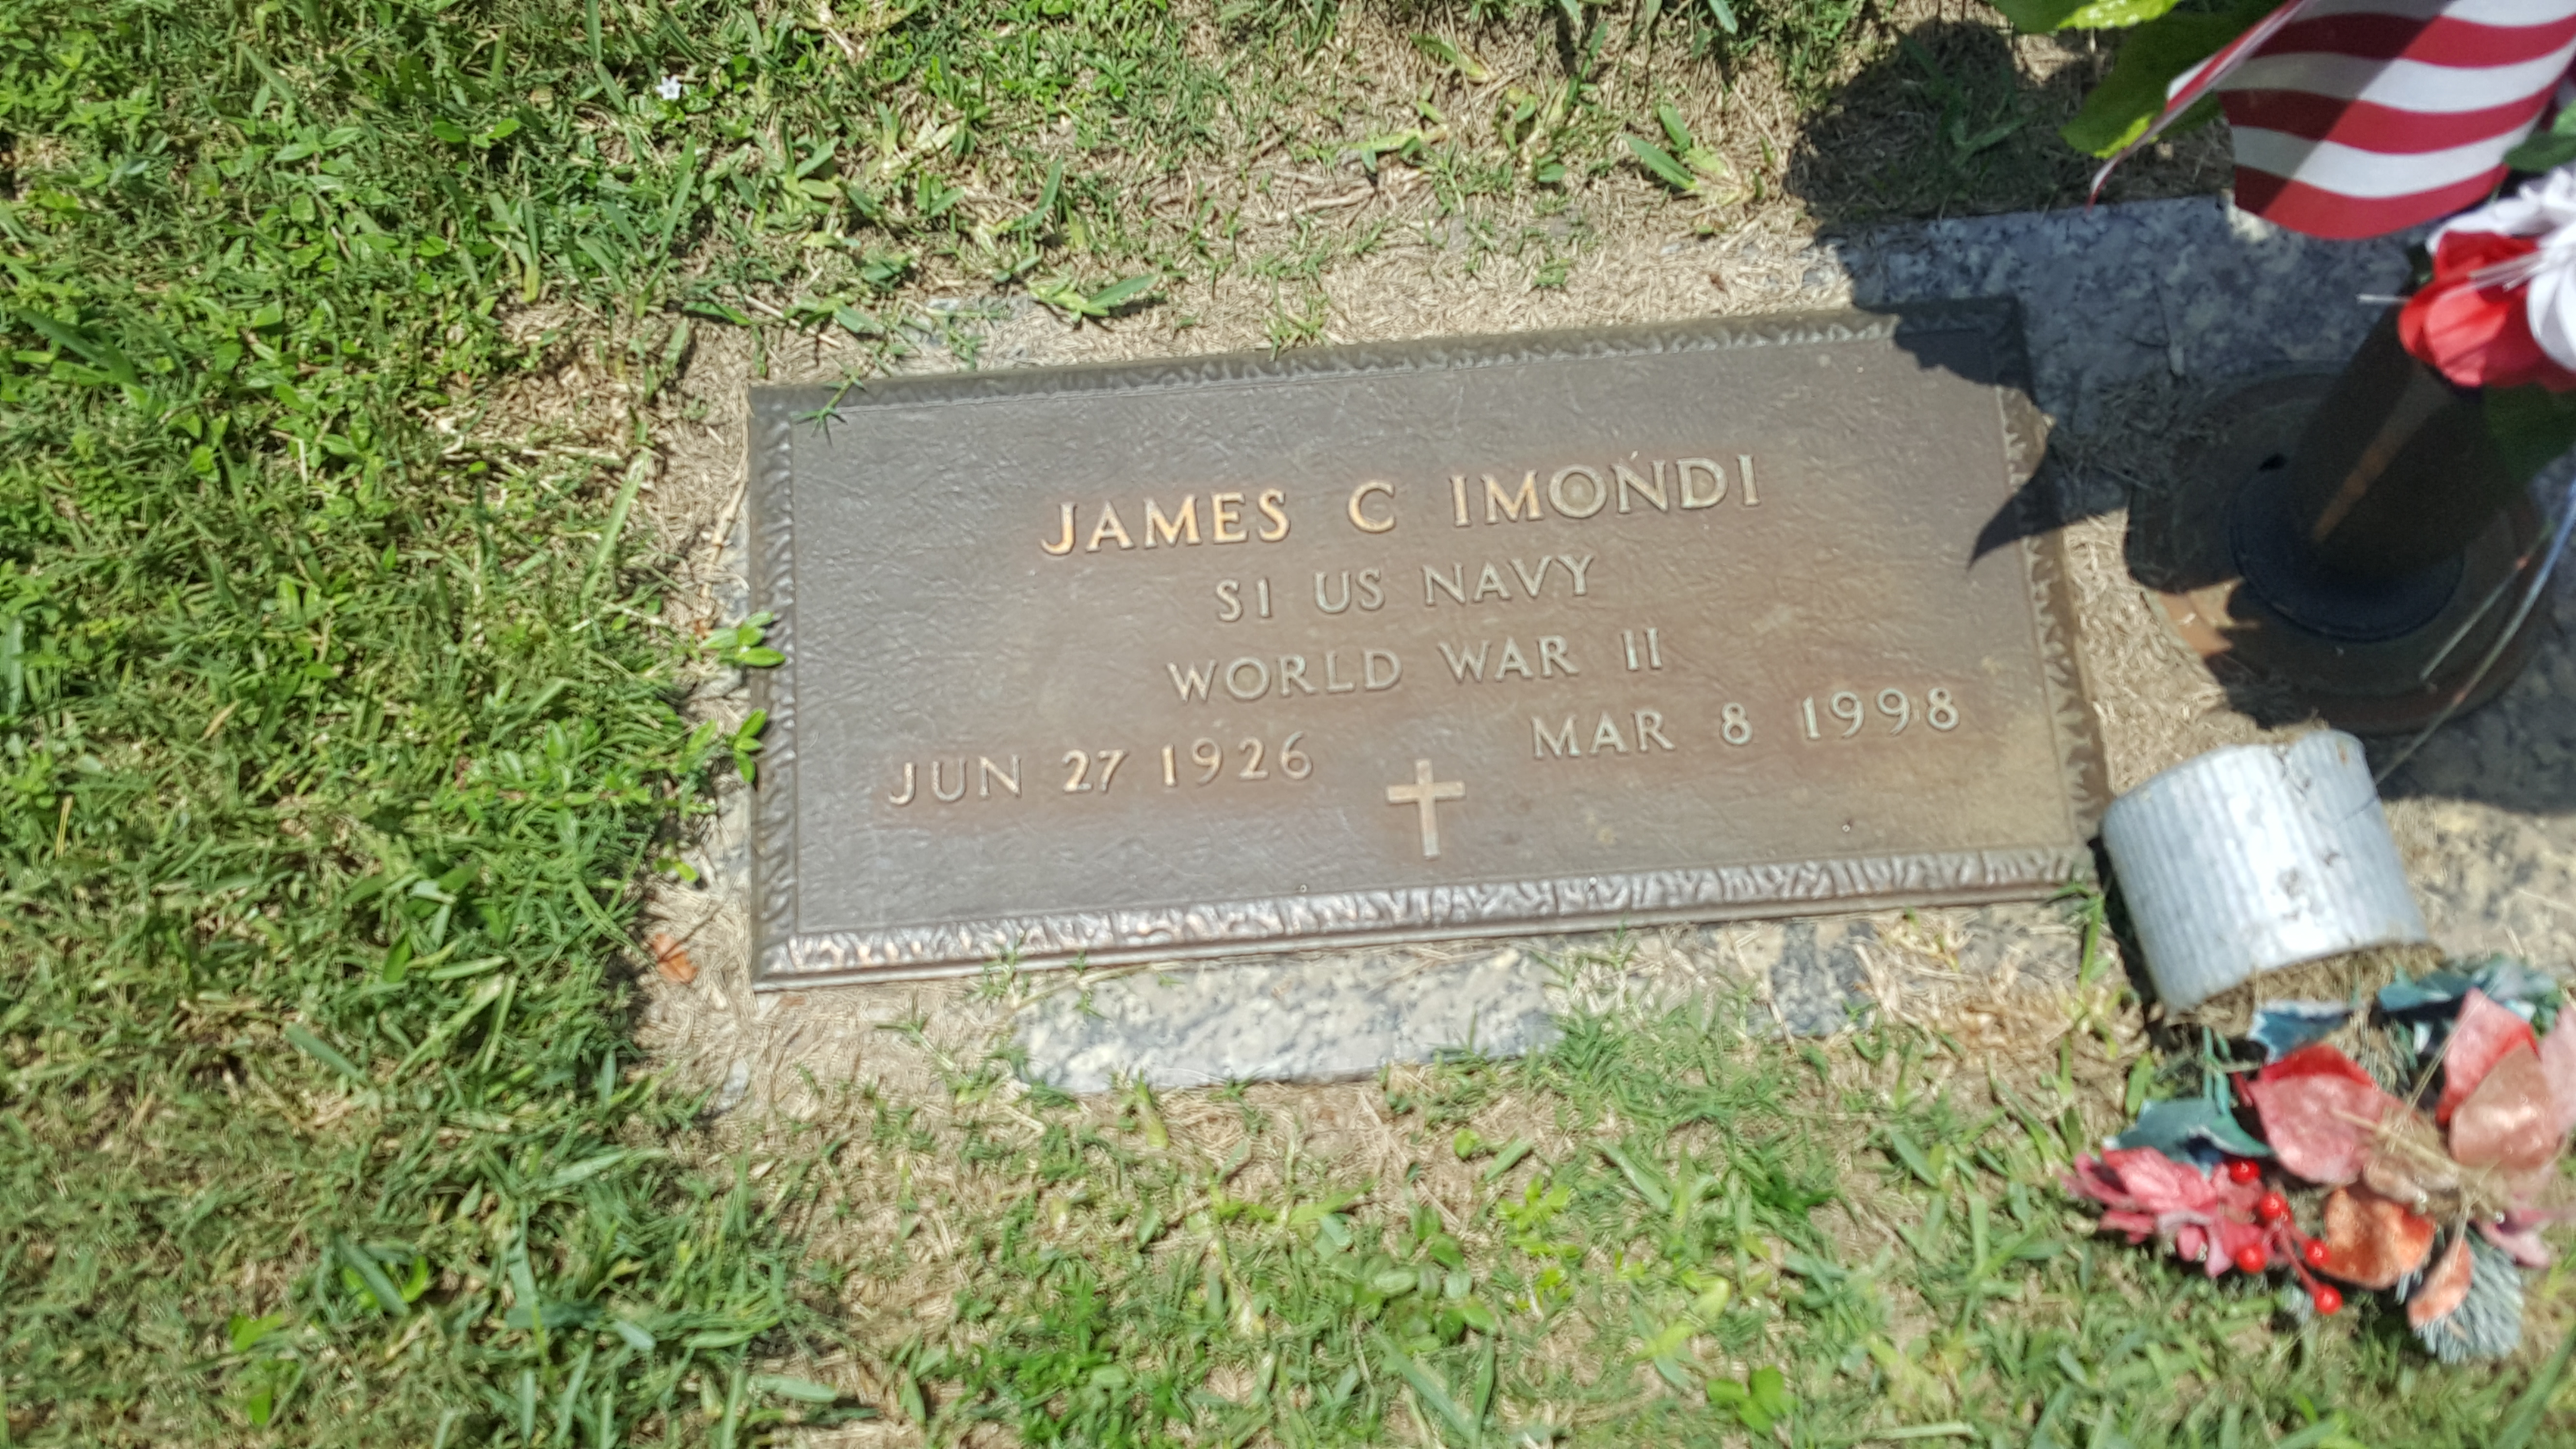 James C Imondi